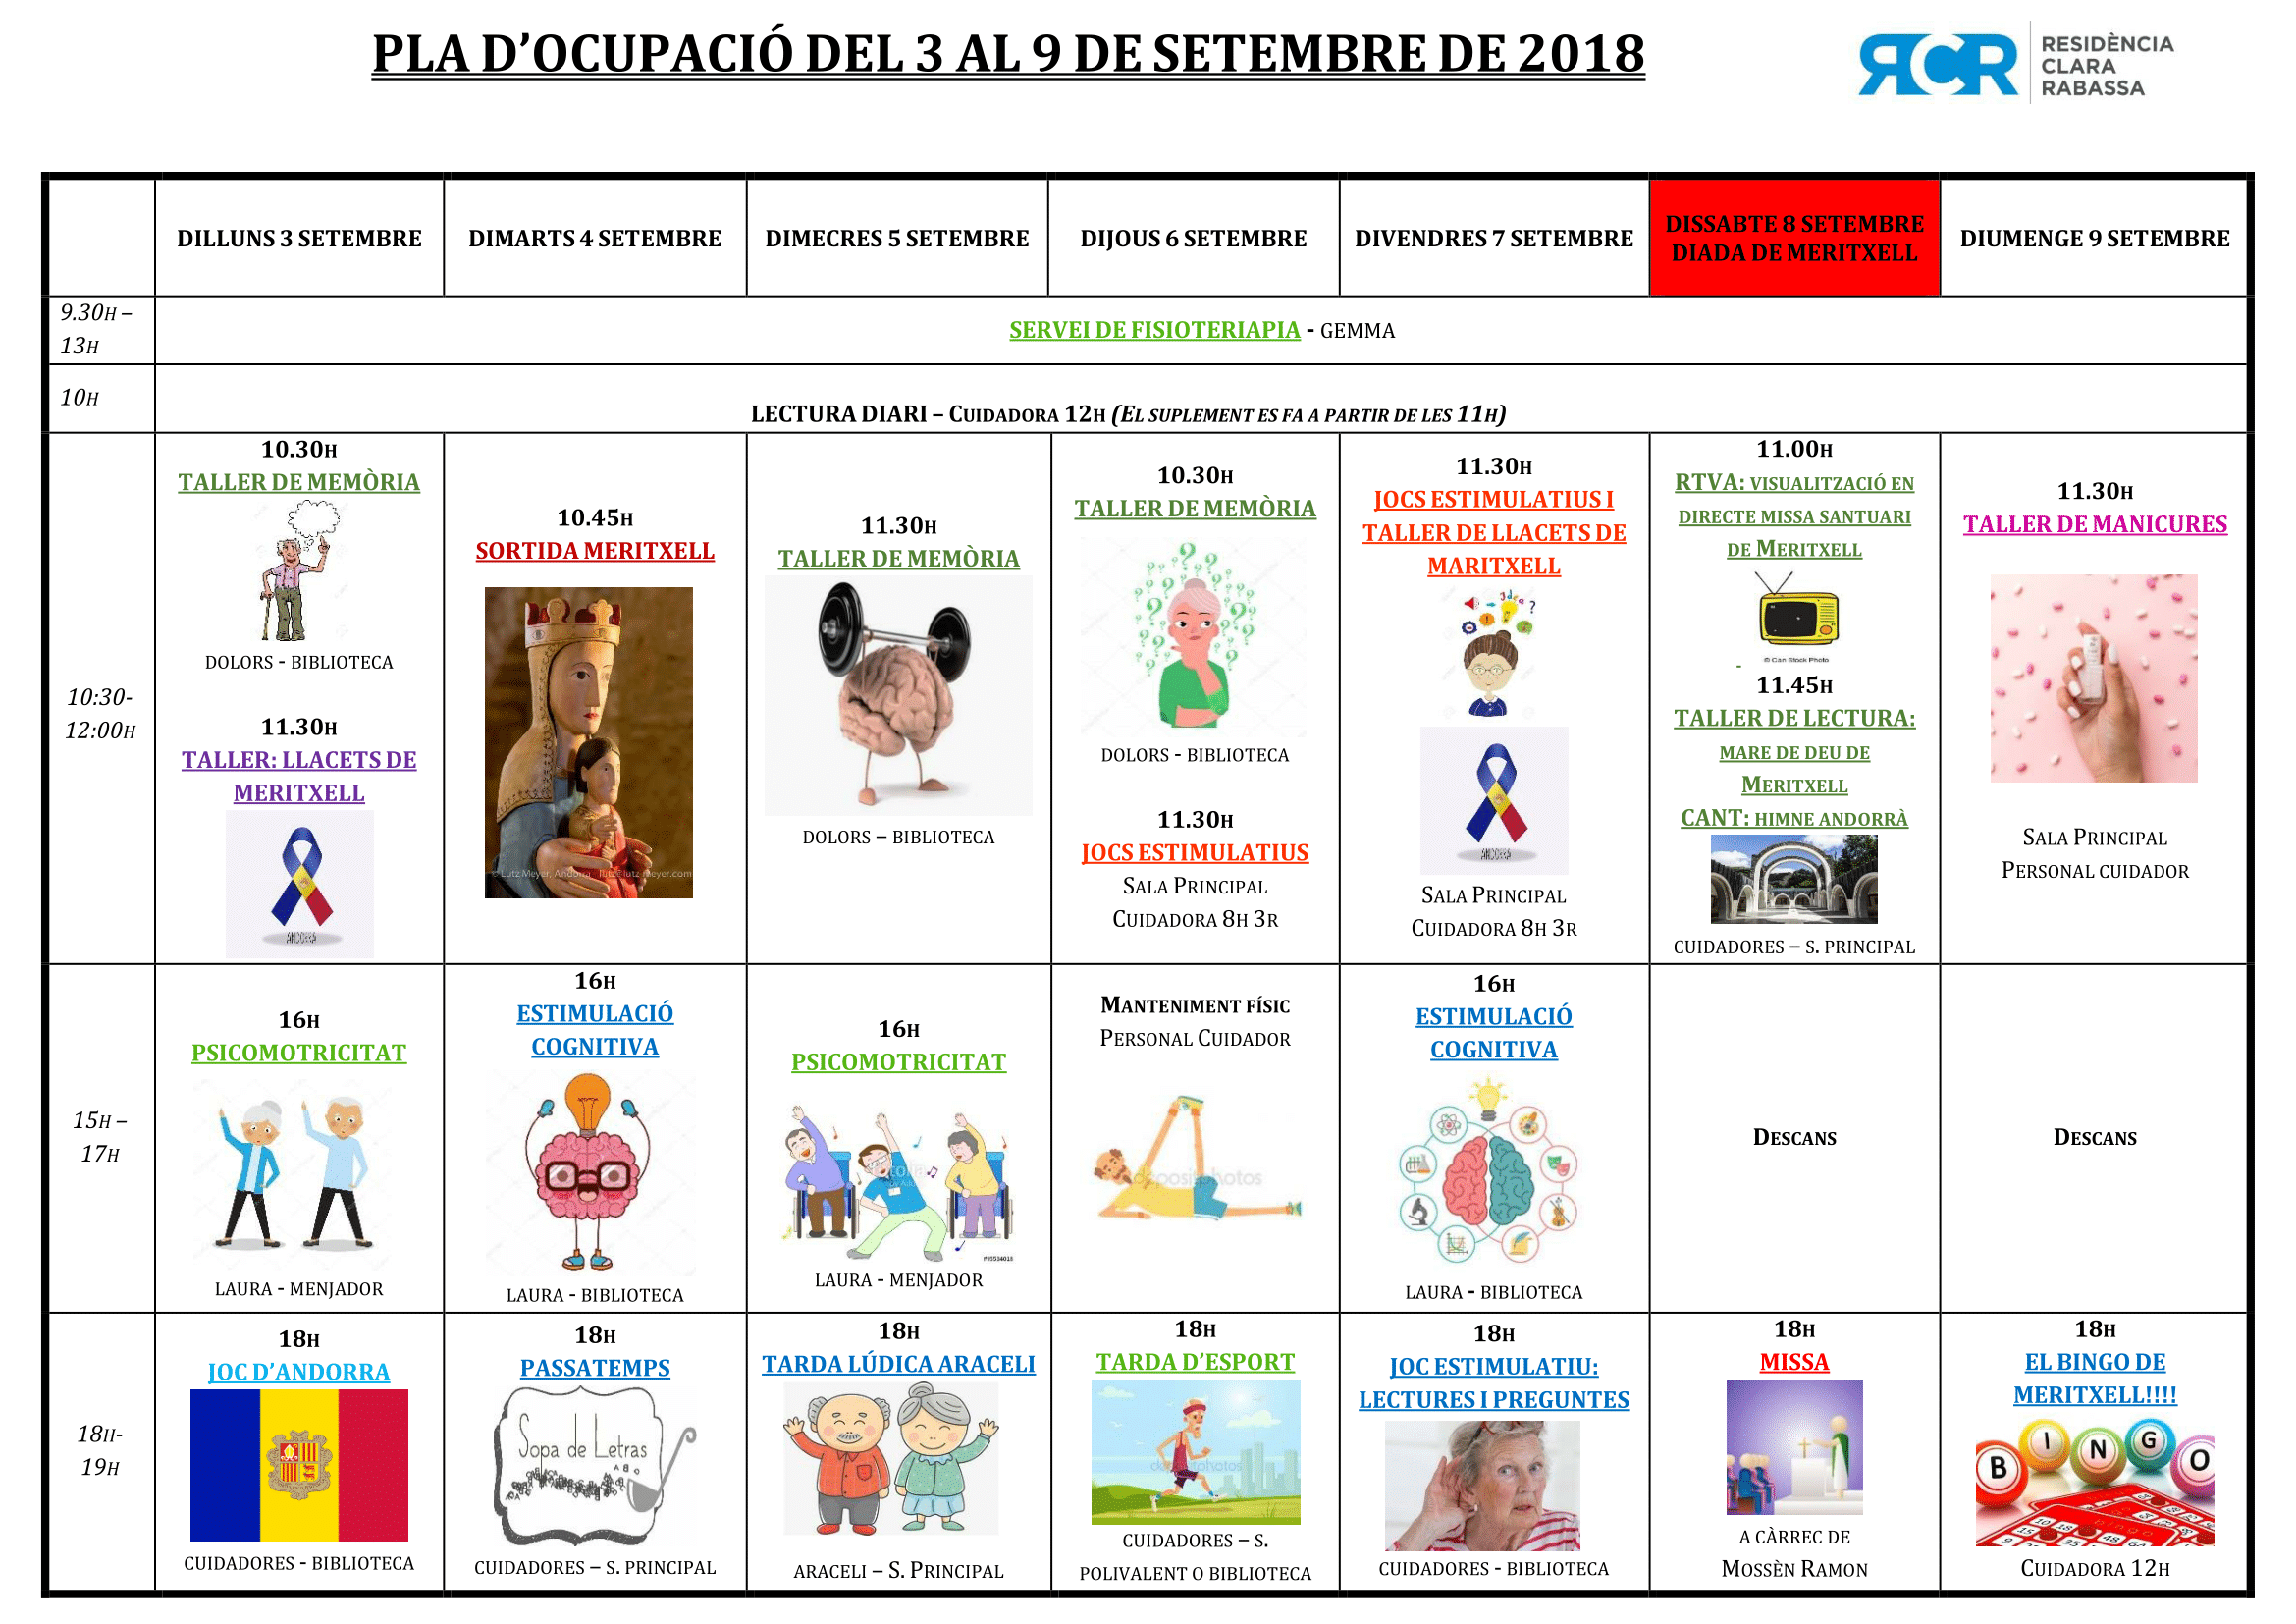 PLA OCUPACIÓ DEL 3 AL 9 DE SETEMBRE DE 2018